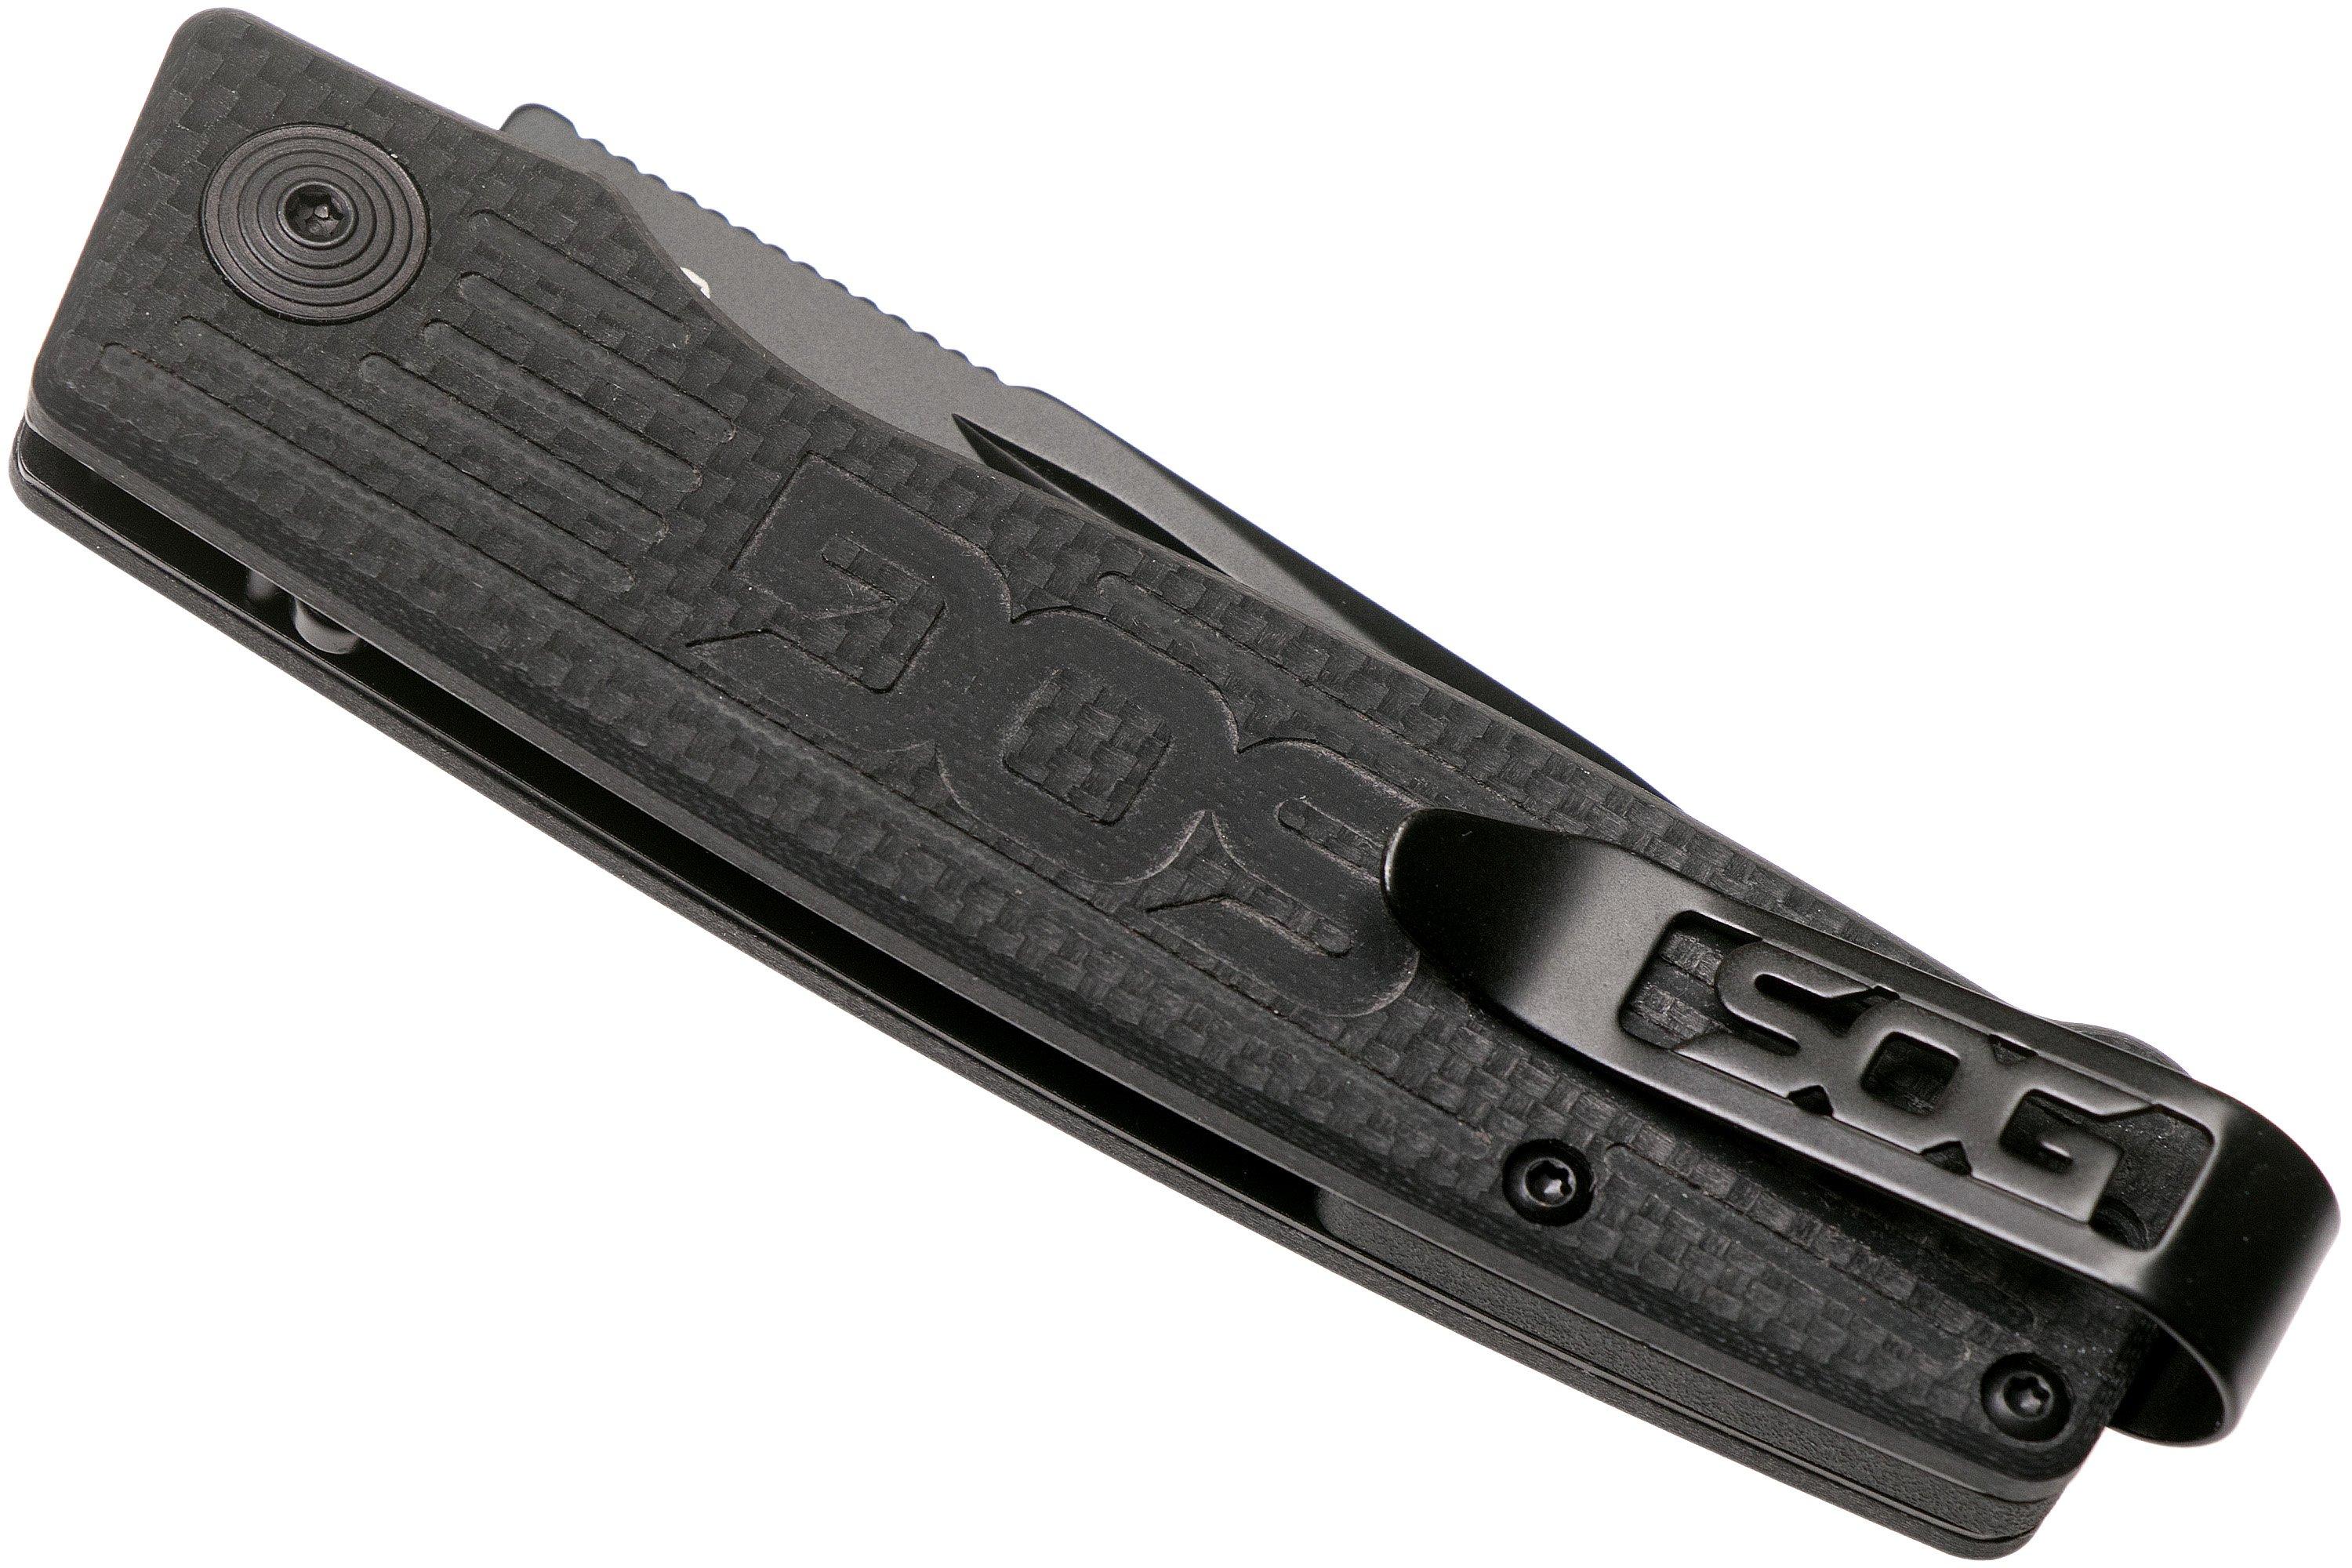 SOG Terminus Black TM1002-BX slipjoint pocket knife | Advantageously ...